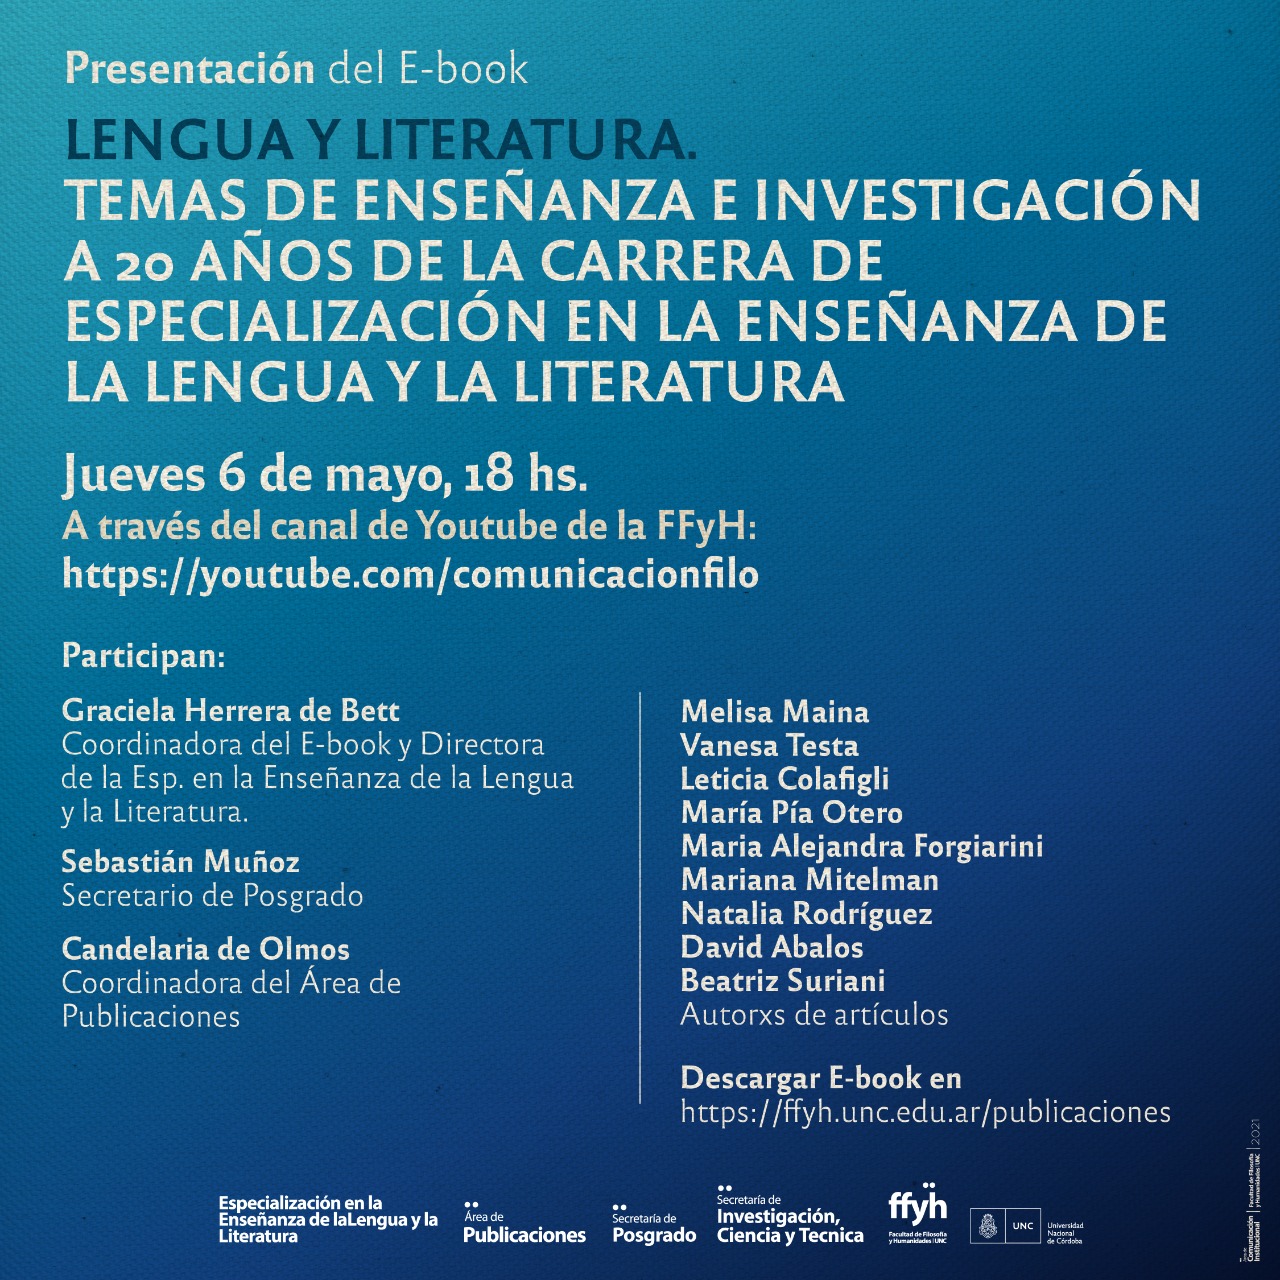 Presentación del E-book “Lengua y Literatura: temas de enseñanza e investigación: a 20 años de la carrera de Especialización en la Enseñanza de la Lengua y la Literatura”